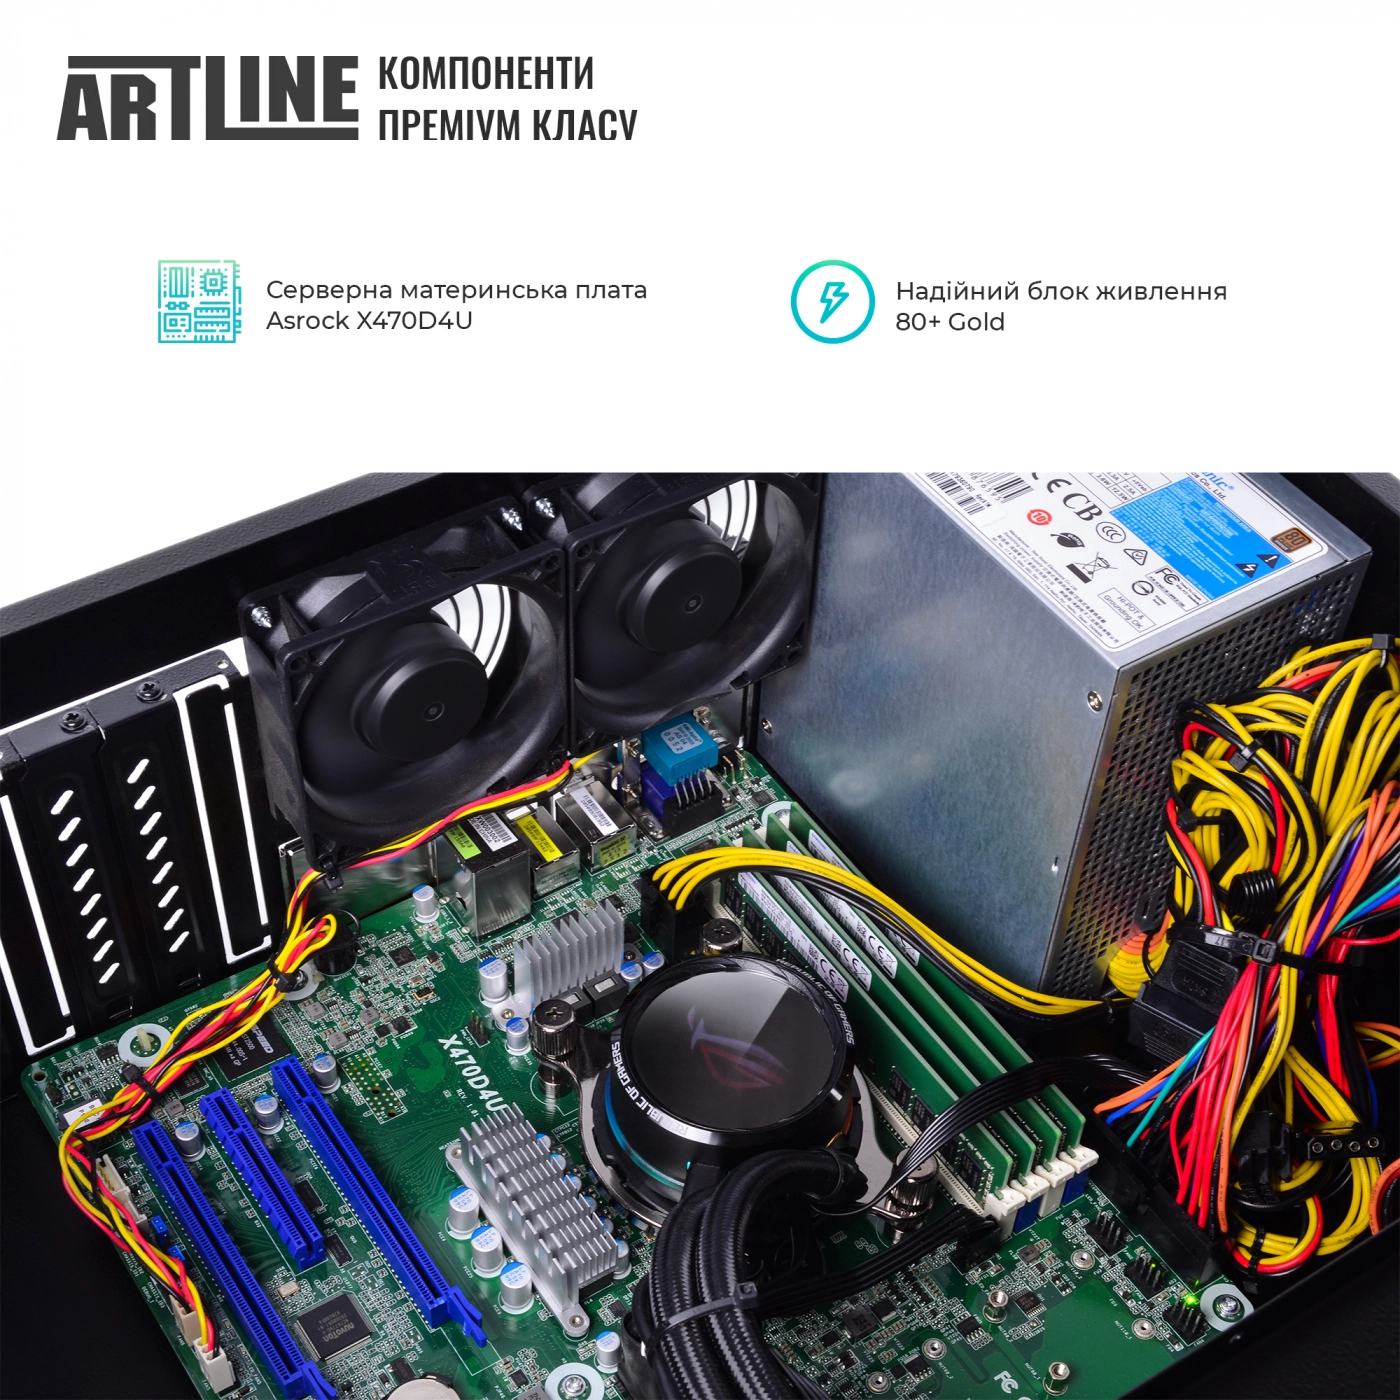 Купить Сервер ARTLINE Business R65v02 - фото 4